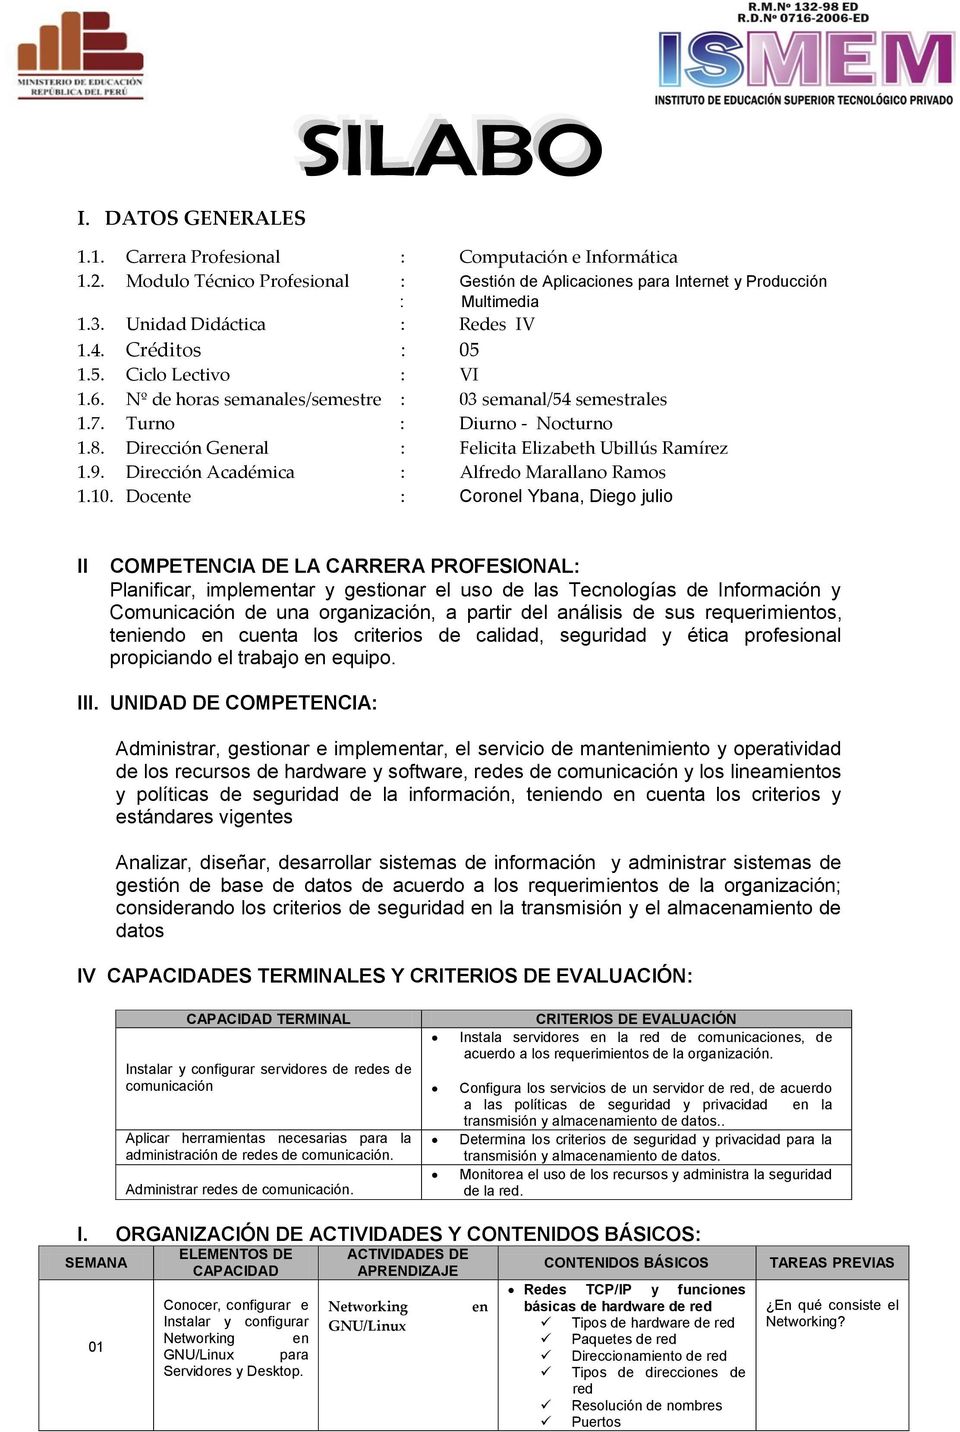 Dirección Académica : Alfredo Marallano Ramos 1.10.